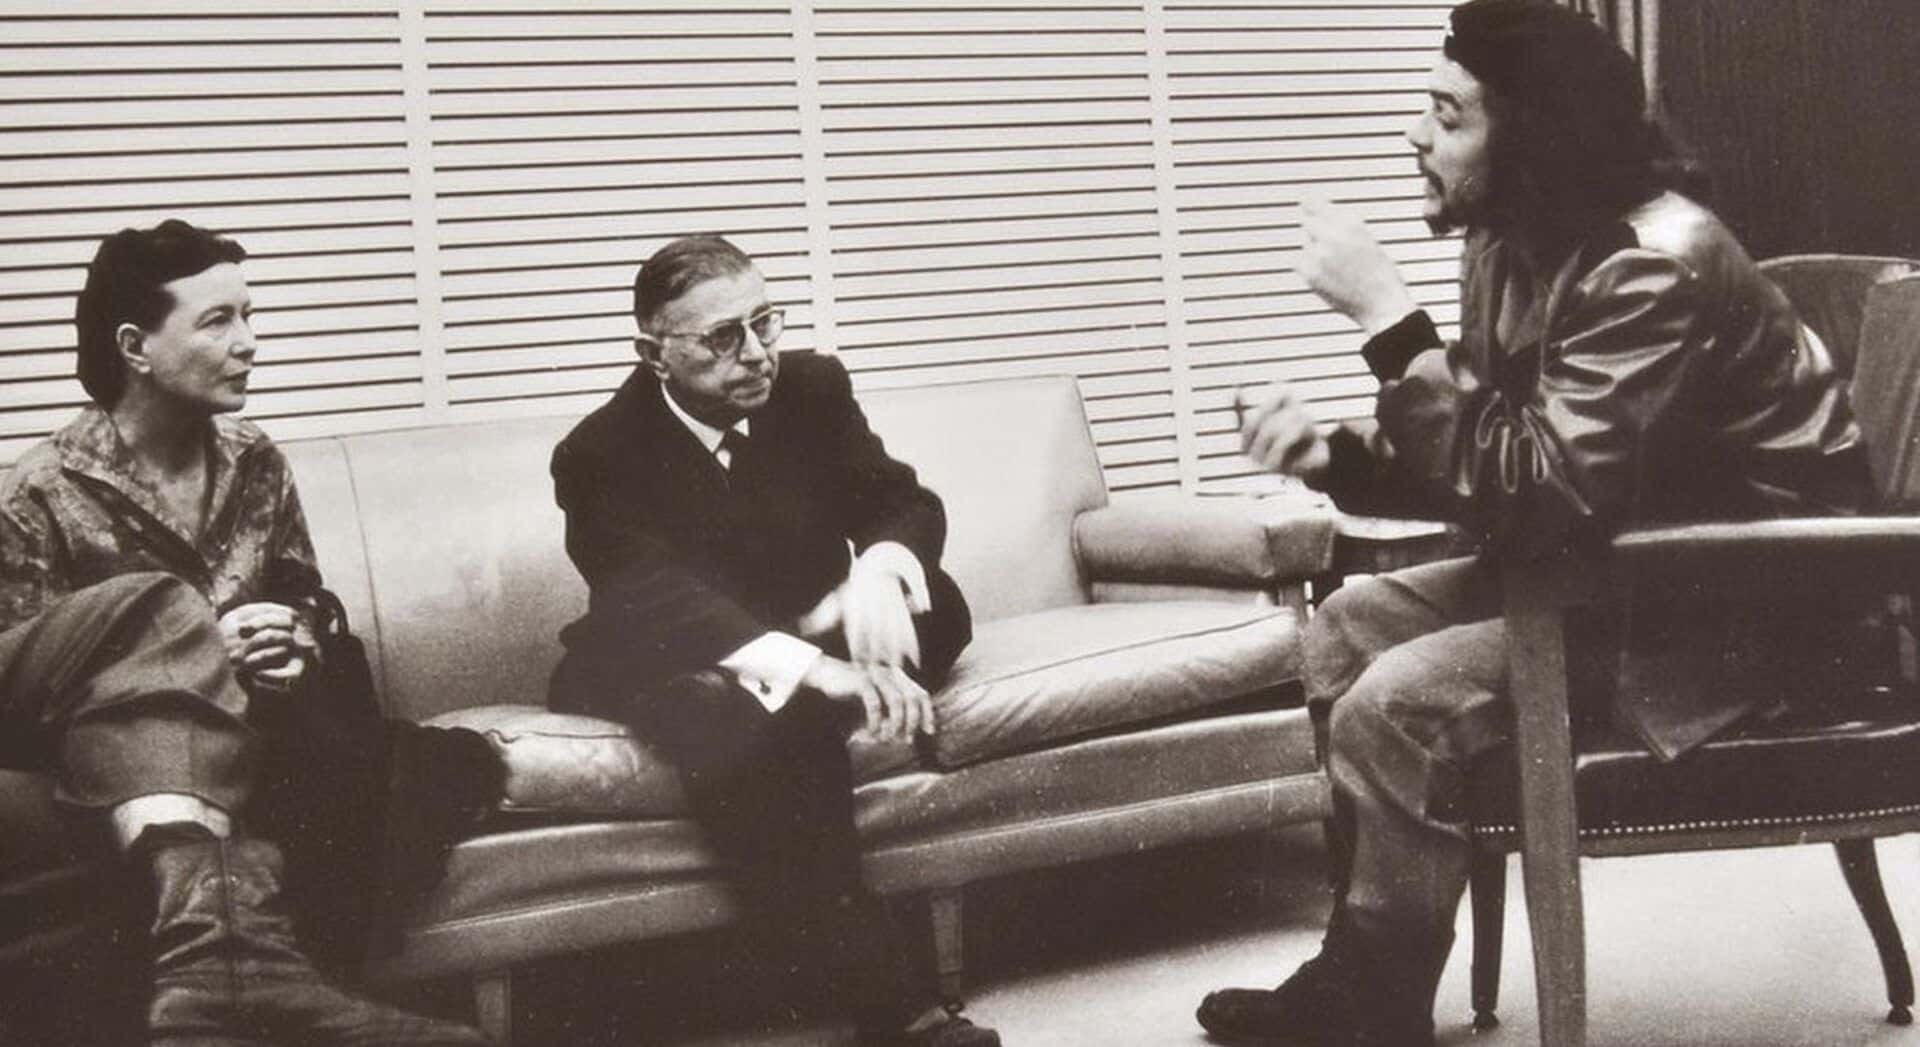 Jean-Paul Sartre – Biografia, ideias e principais obras